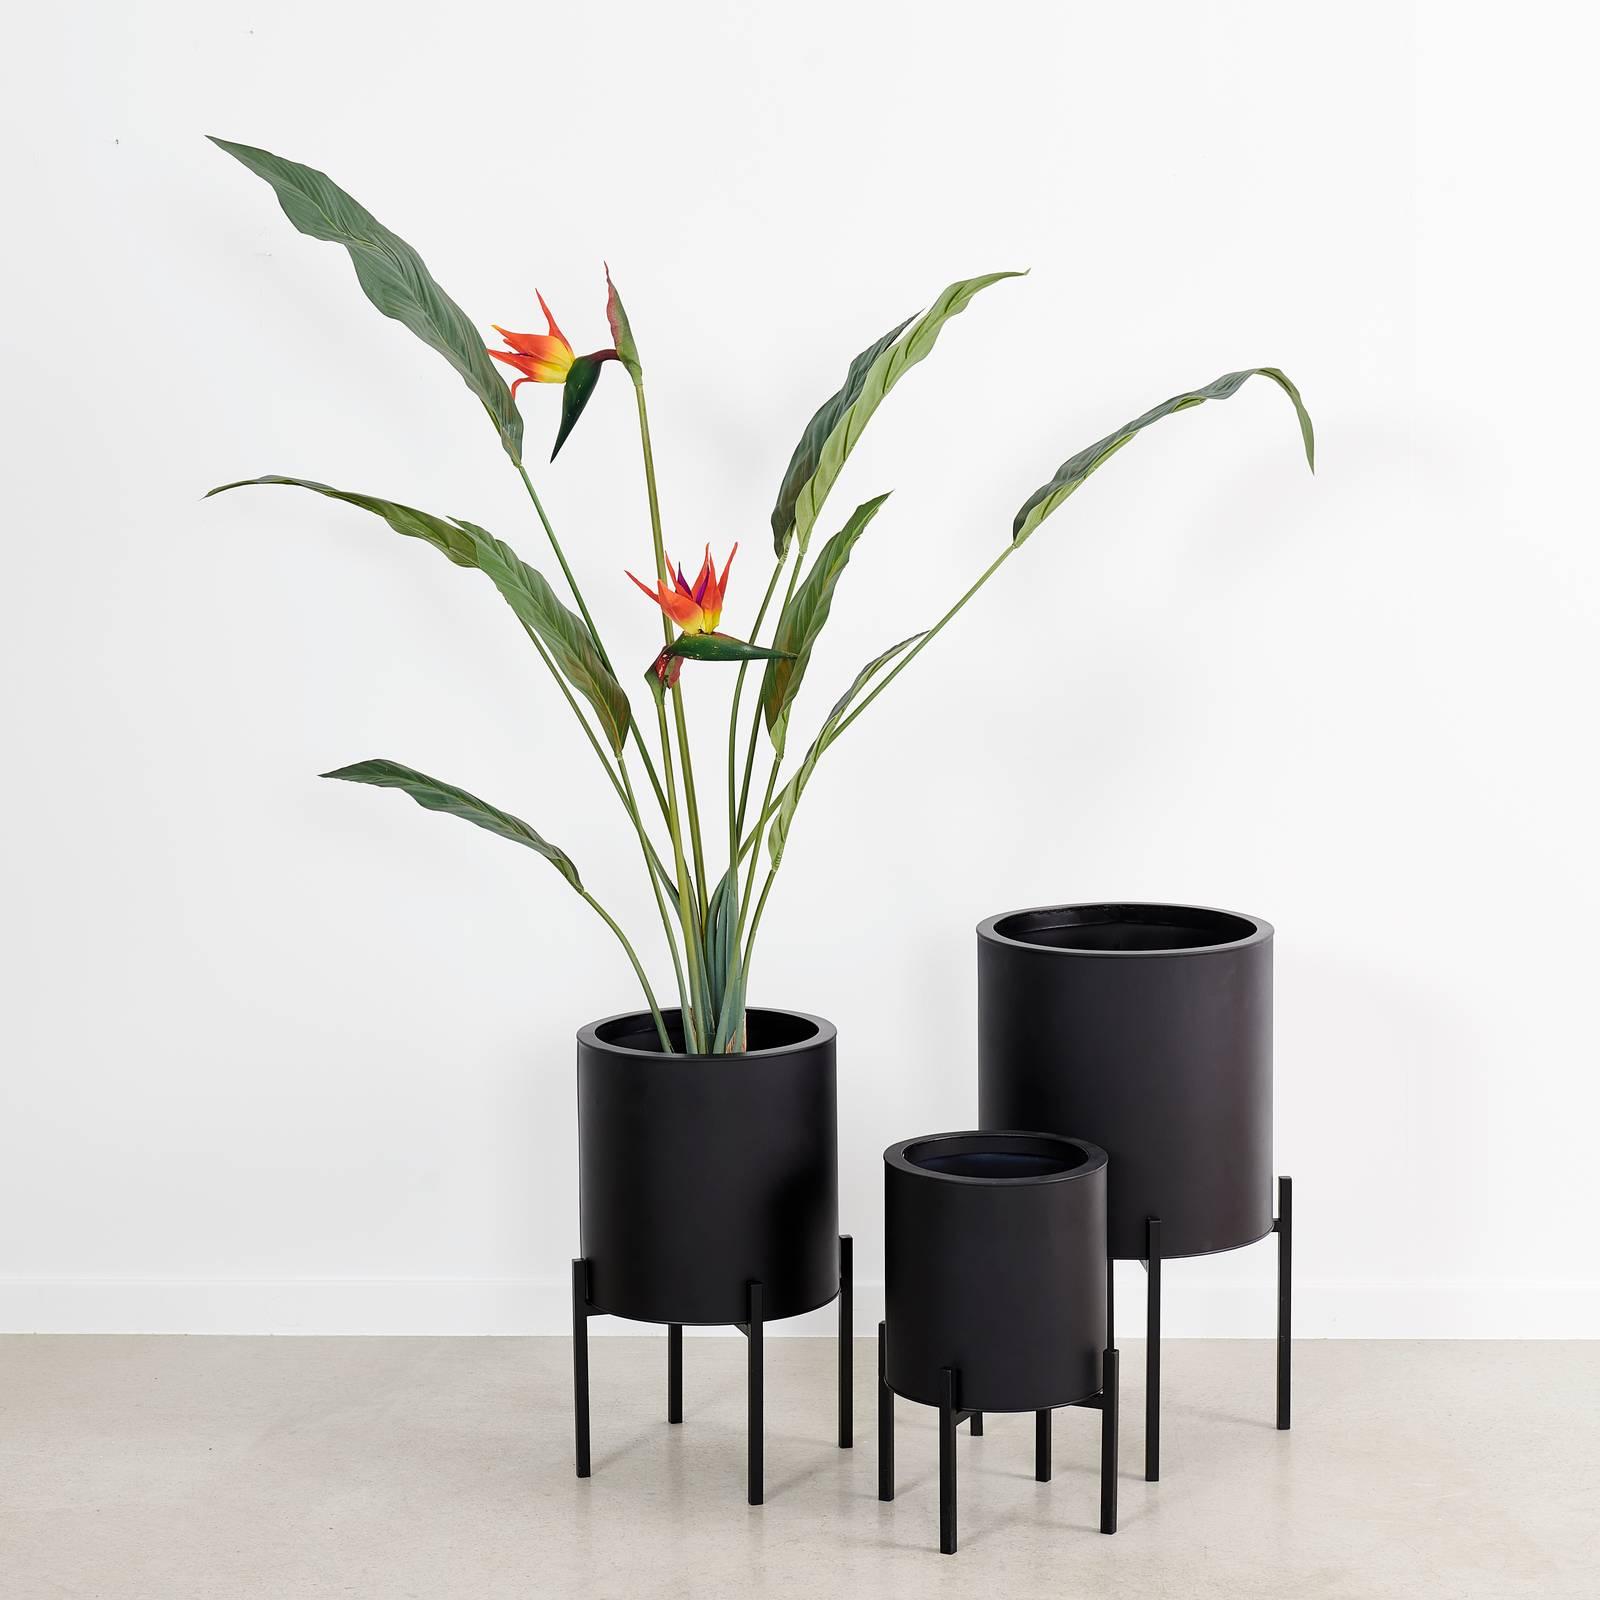 Pianta vaso per interni plastica nera con motivo moderno 13cm arredamento di marca Forte 